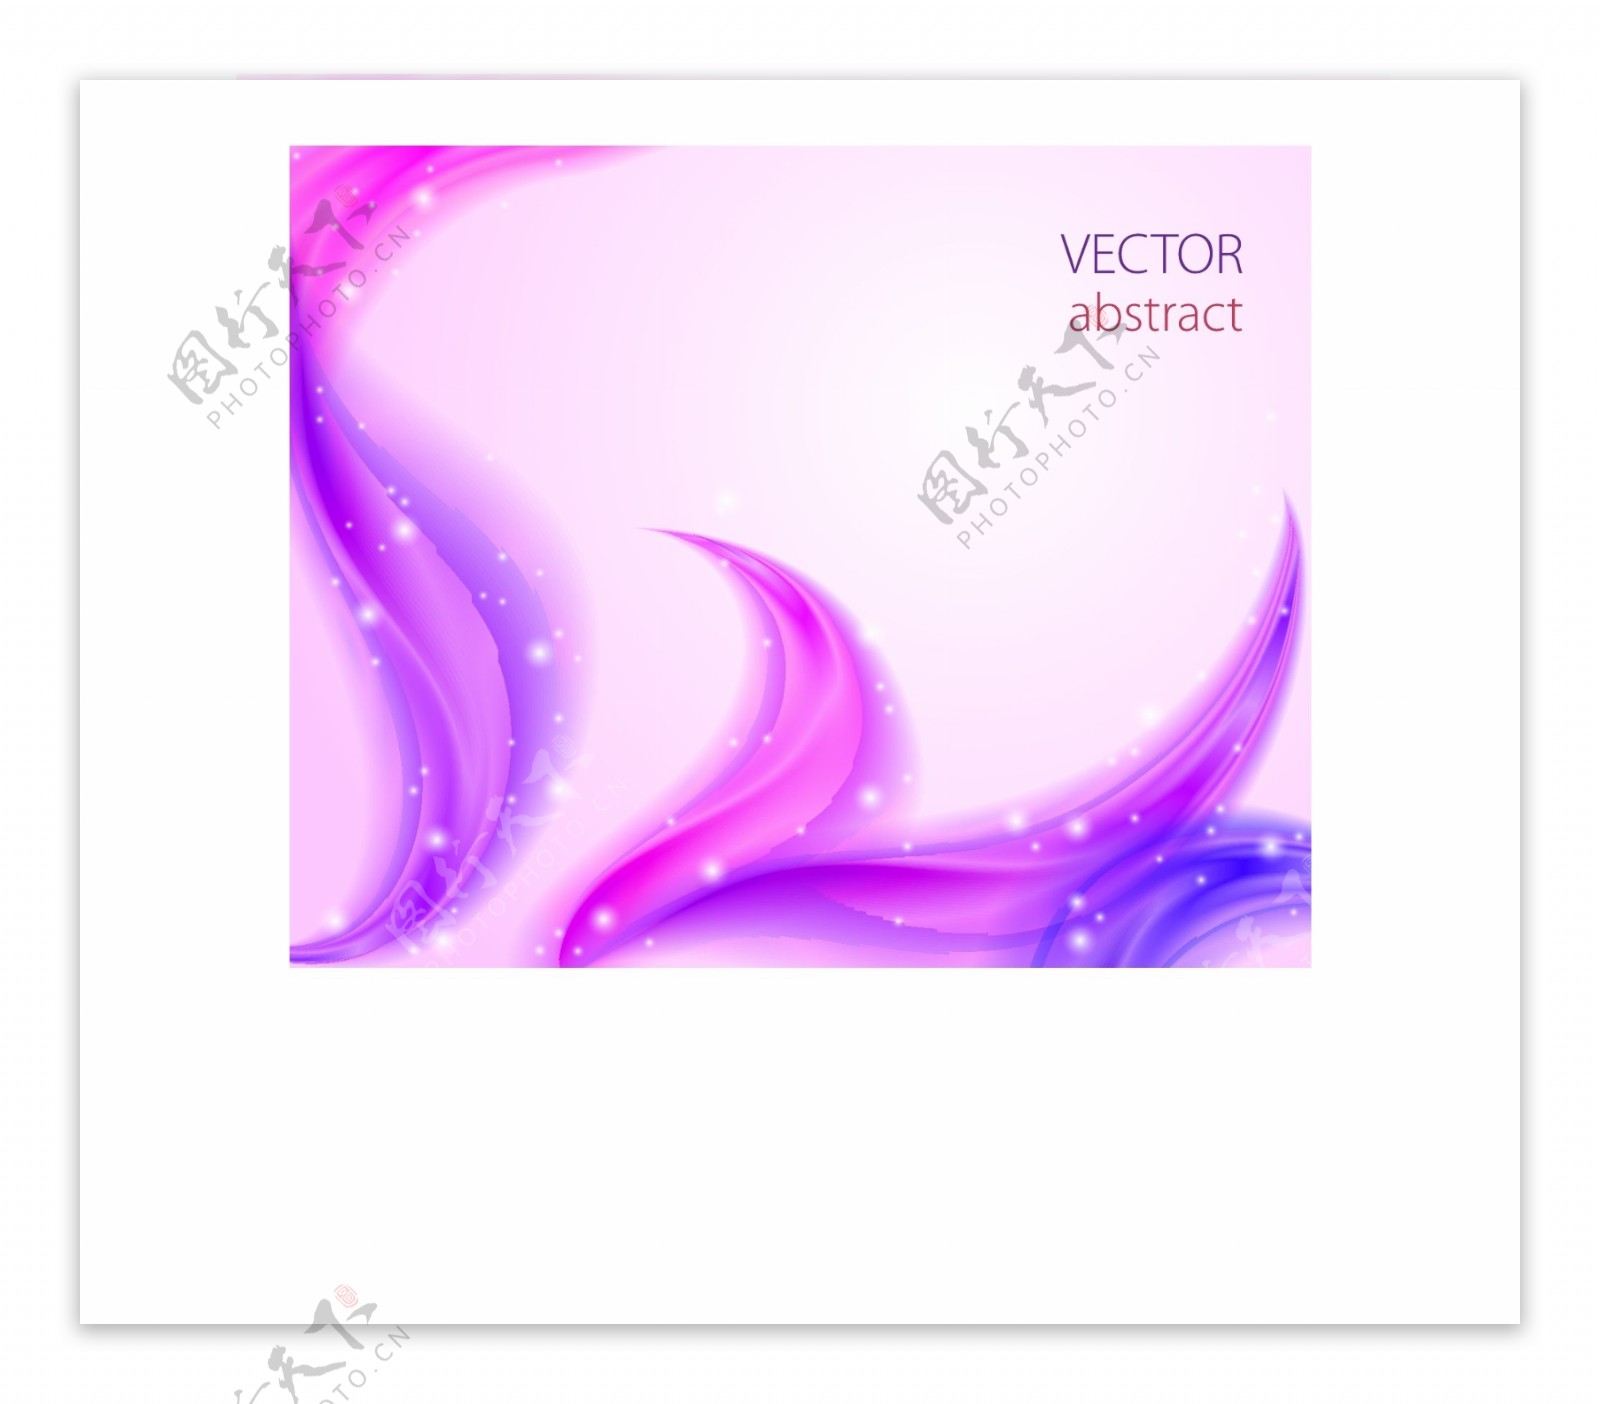 紫色星星时尚梦幻紫色背景矢量素材